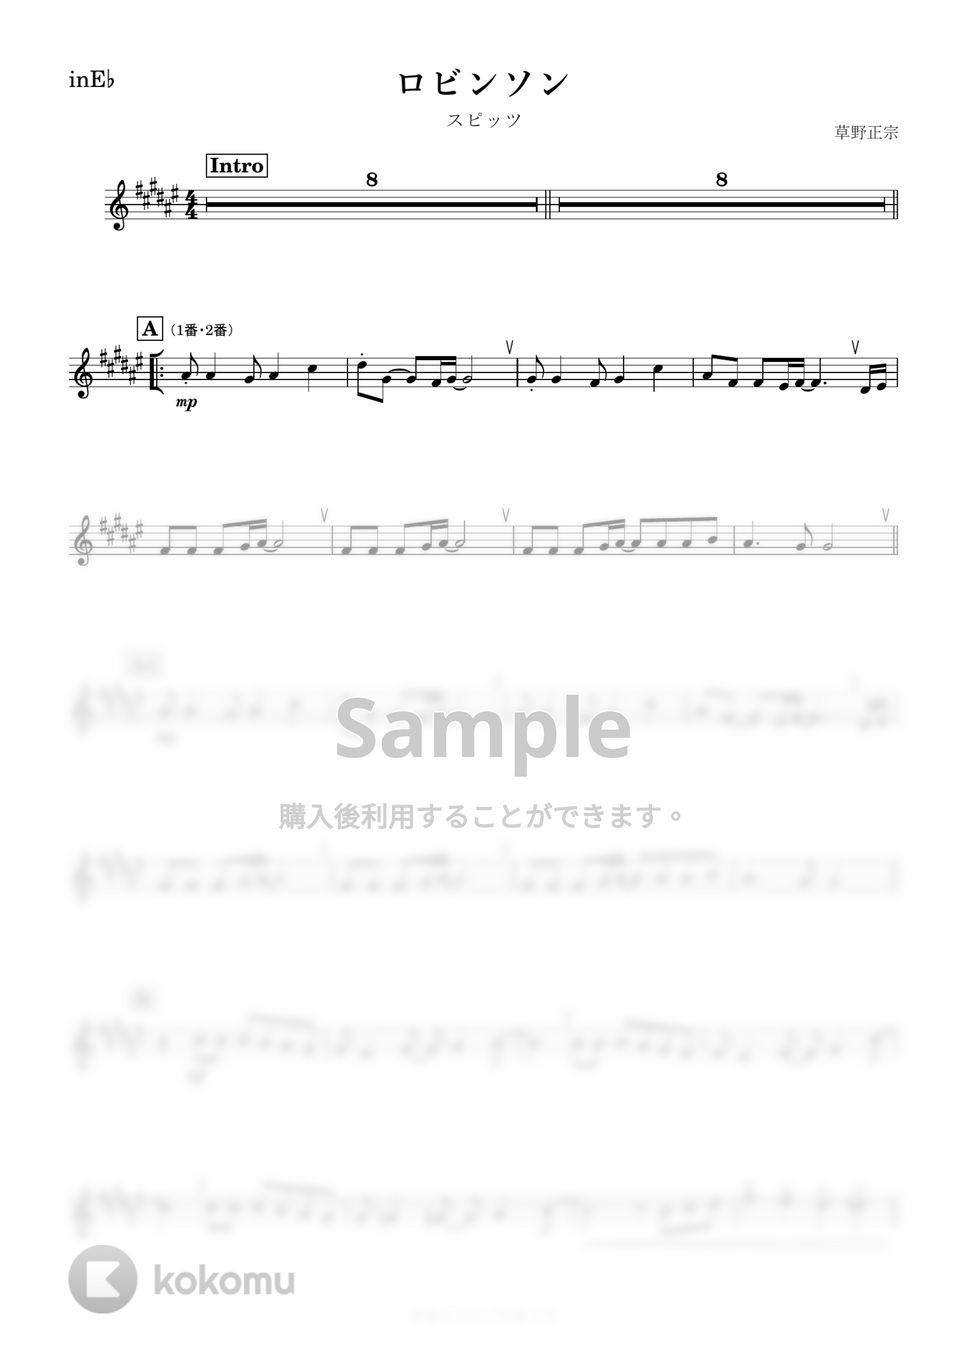 スピッツ - ロビンソン (E♭) by kanamusic